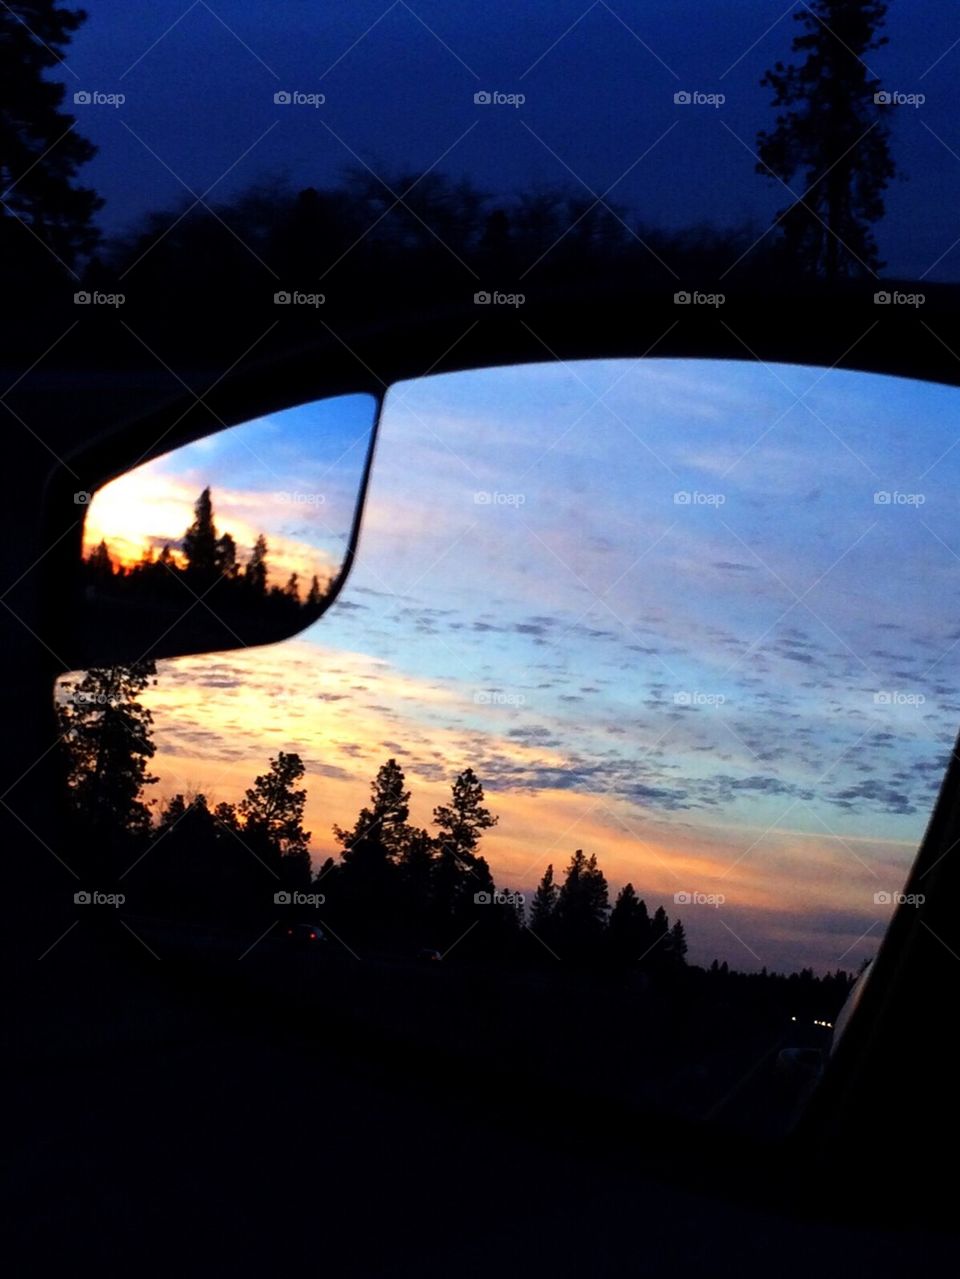 Sunset mirror